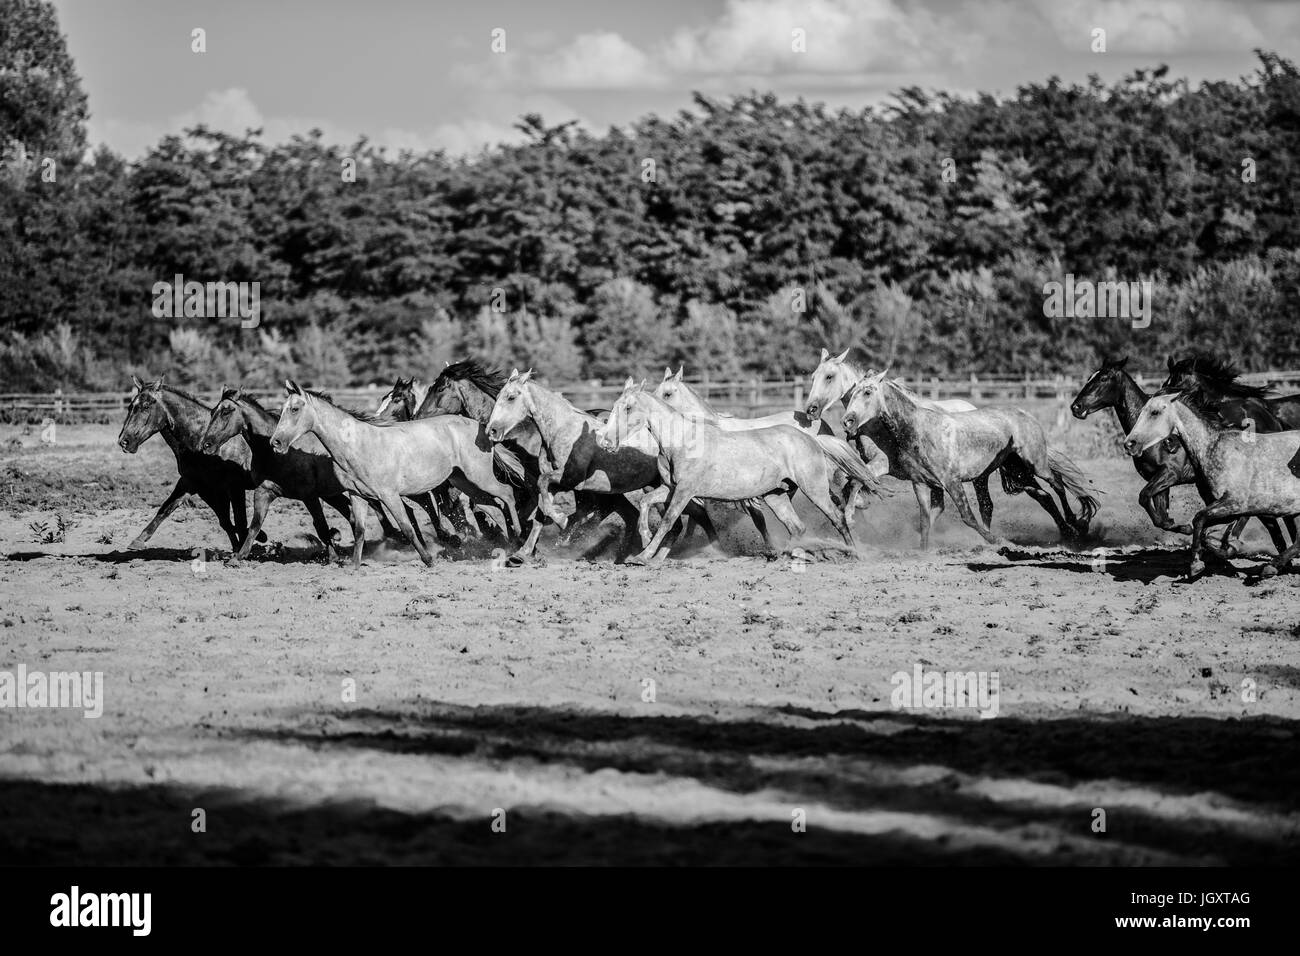 Couleur Noir et blanc photo de chevaux en cours d'été Banque D'Images